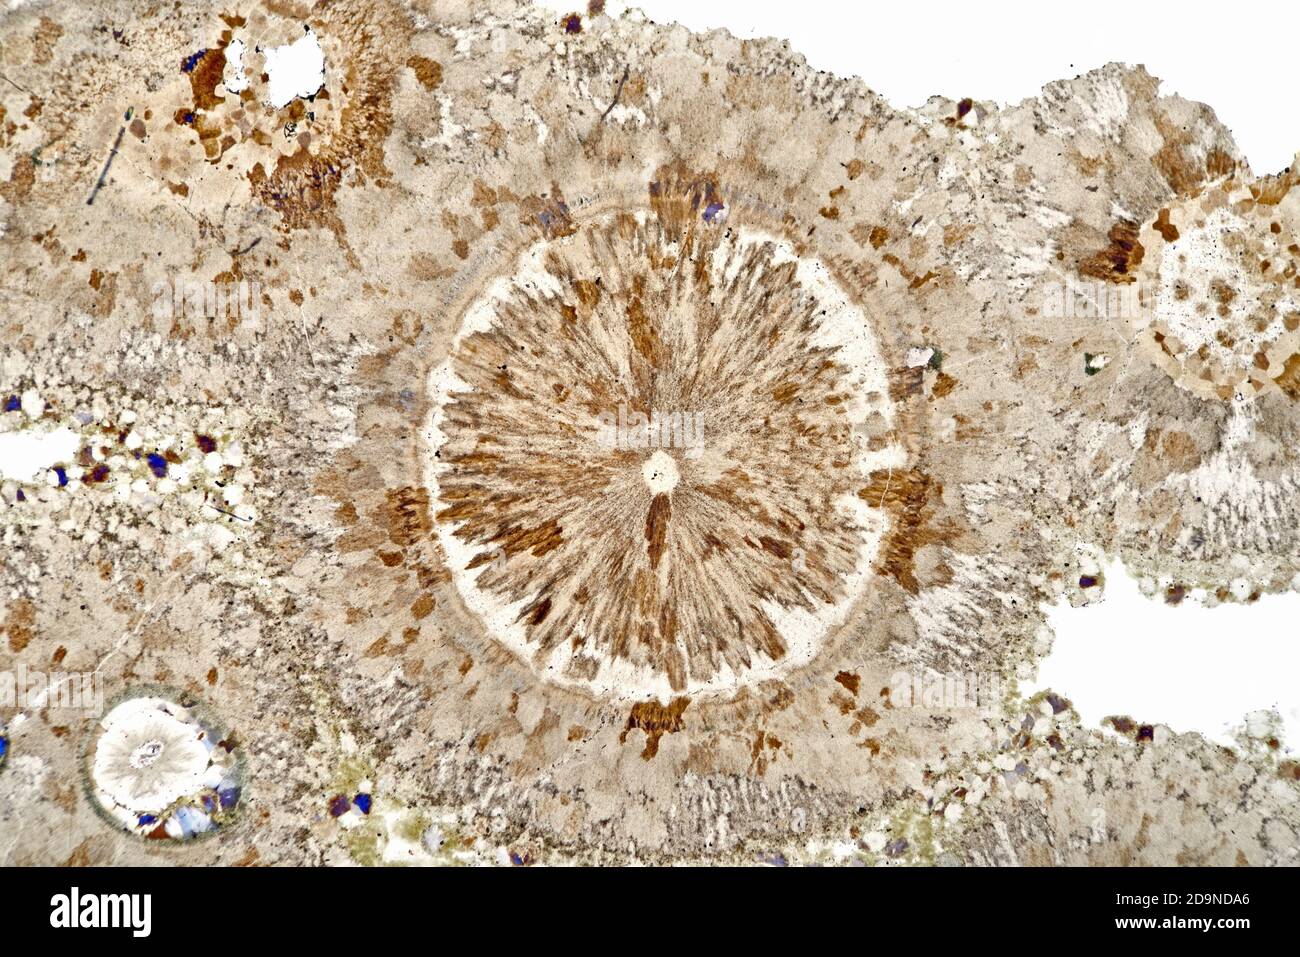 Pierre à pichet Spherulitique, section de glissement, Arran, Écosse, Royaume-Uni, photomicrographe à fond clair Banque D'Images